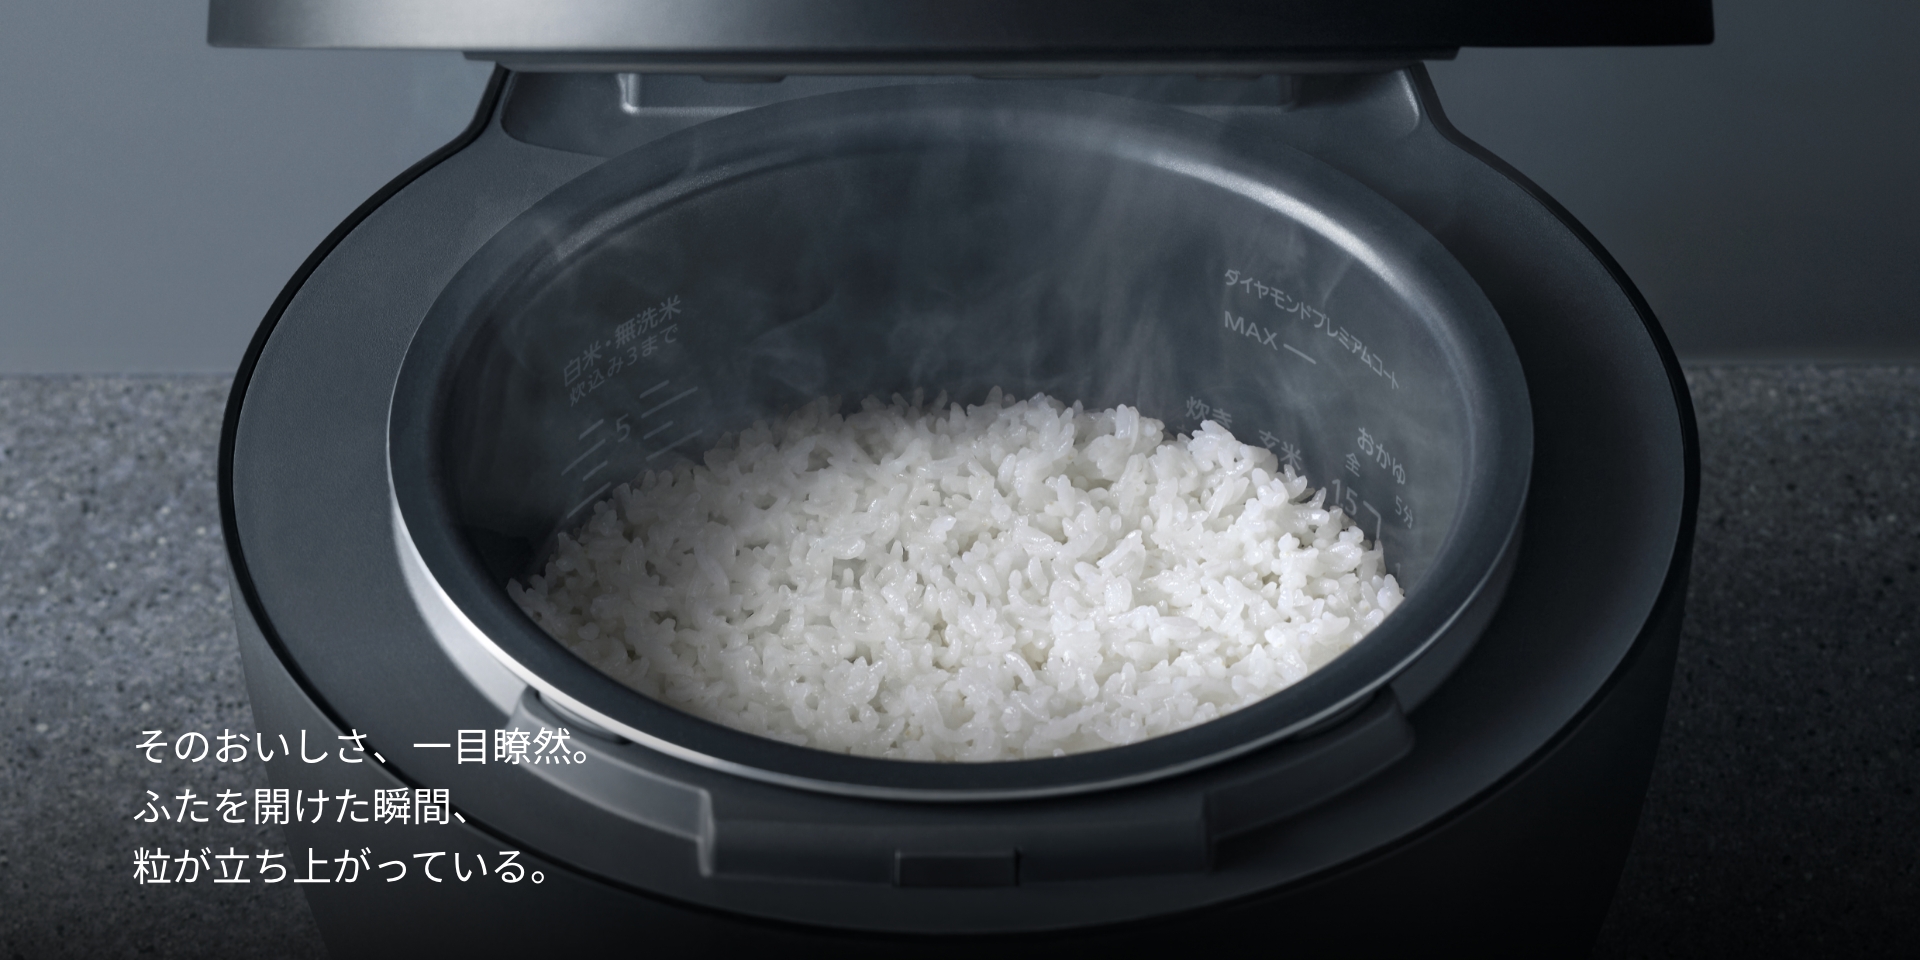 可変圧力IHジャー炊飯器 ビストロ Vシリーズ | 炊飯器 | Panasonic